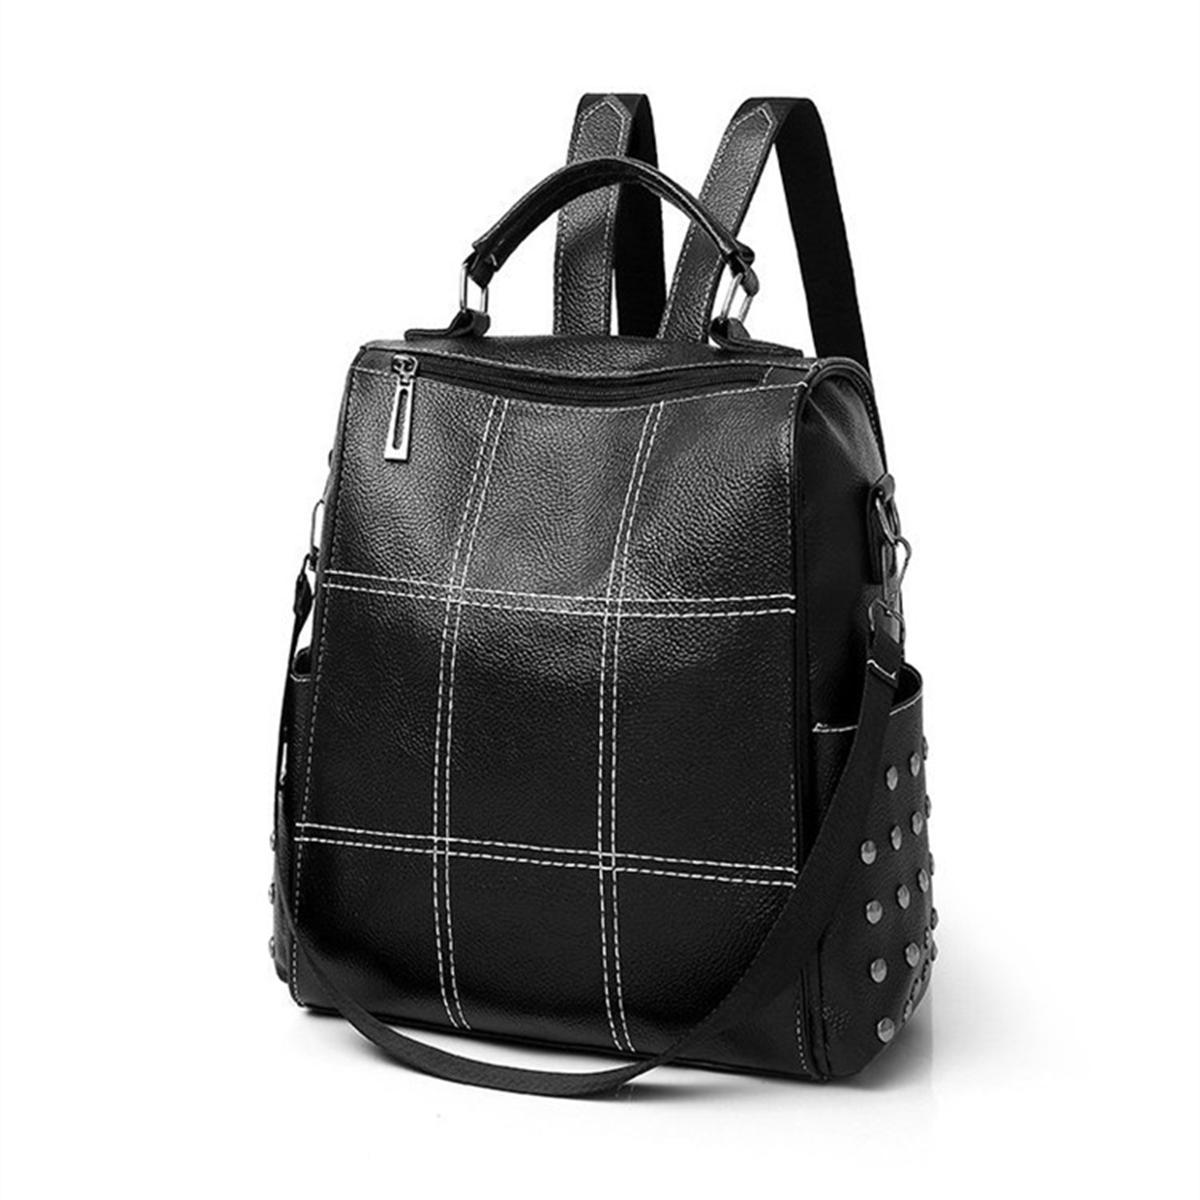 Women Lady Girls School Leather Backpack Outdoor Travel Portable Handbag Shoulder Bag